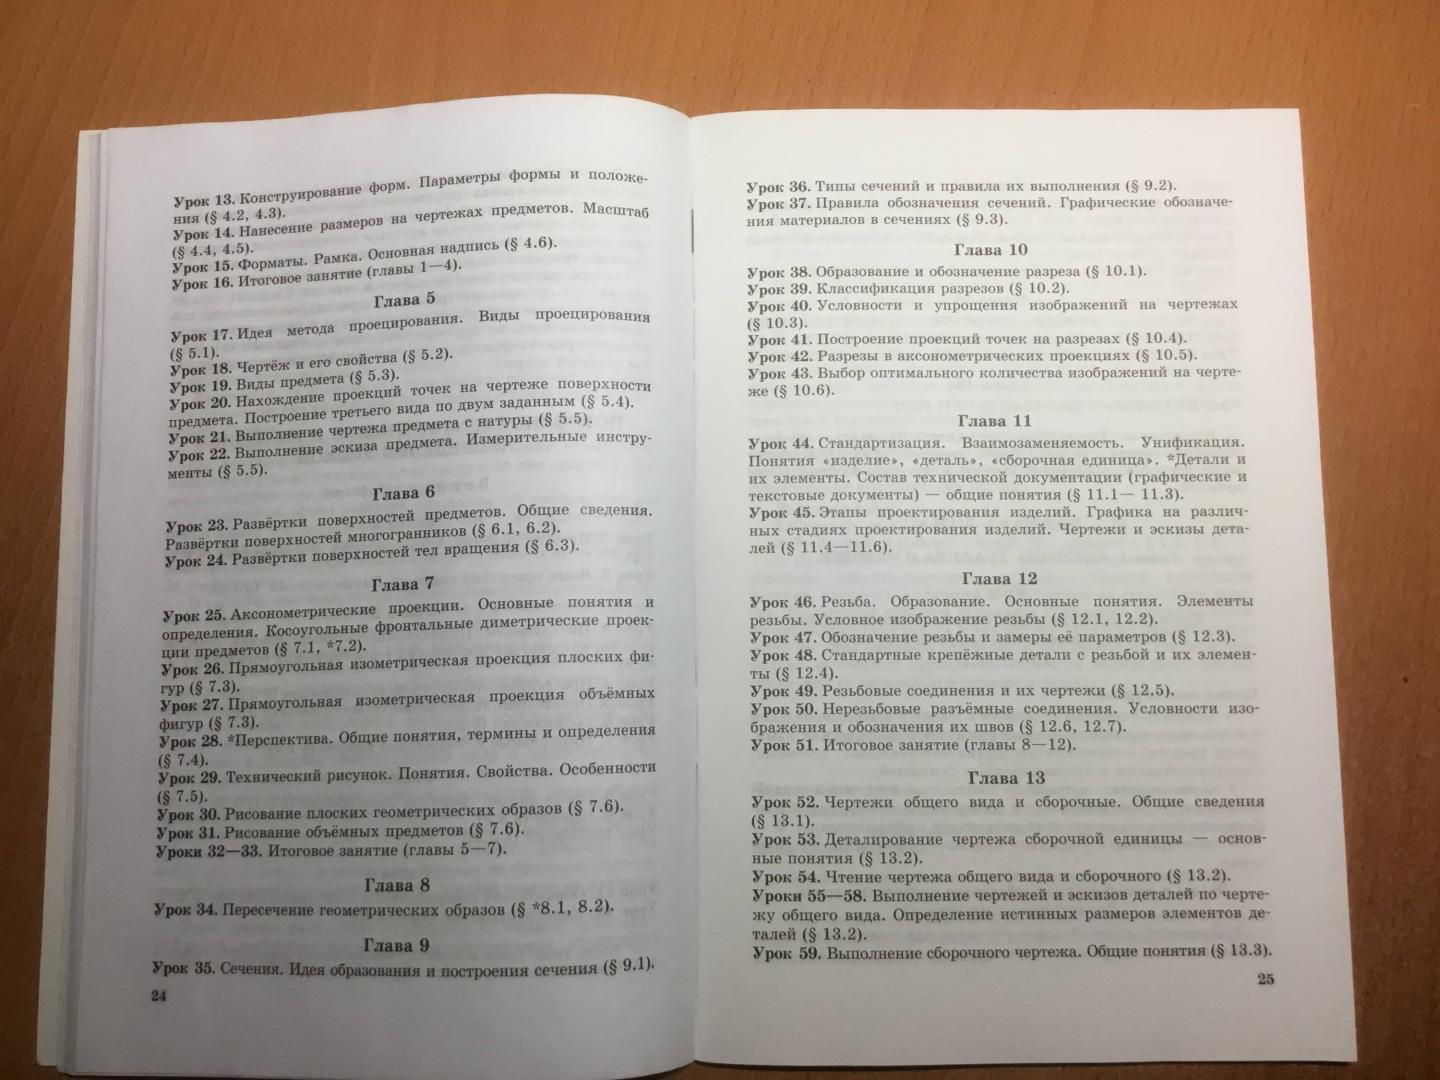 Иллюстрация 12 из 16 для Программно-методический материал. Технология. Черчения и графика. 8 - 9 классы. ФГОС - Павлова, Корзинова | Лабиринт - книги. Источник: Лабиринт